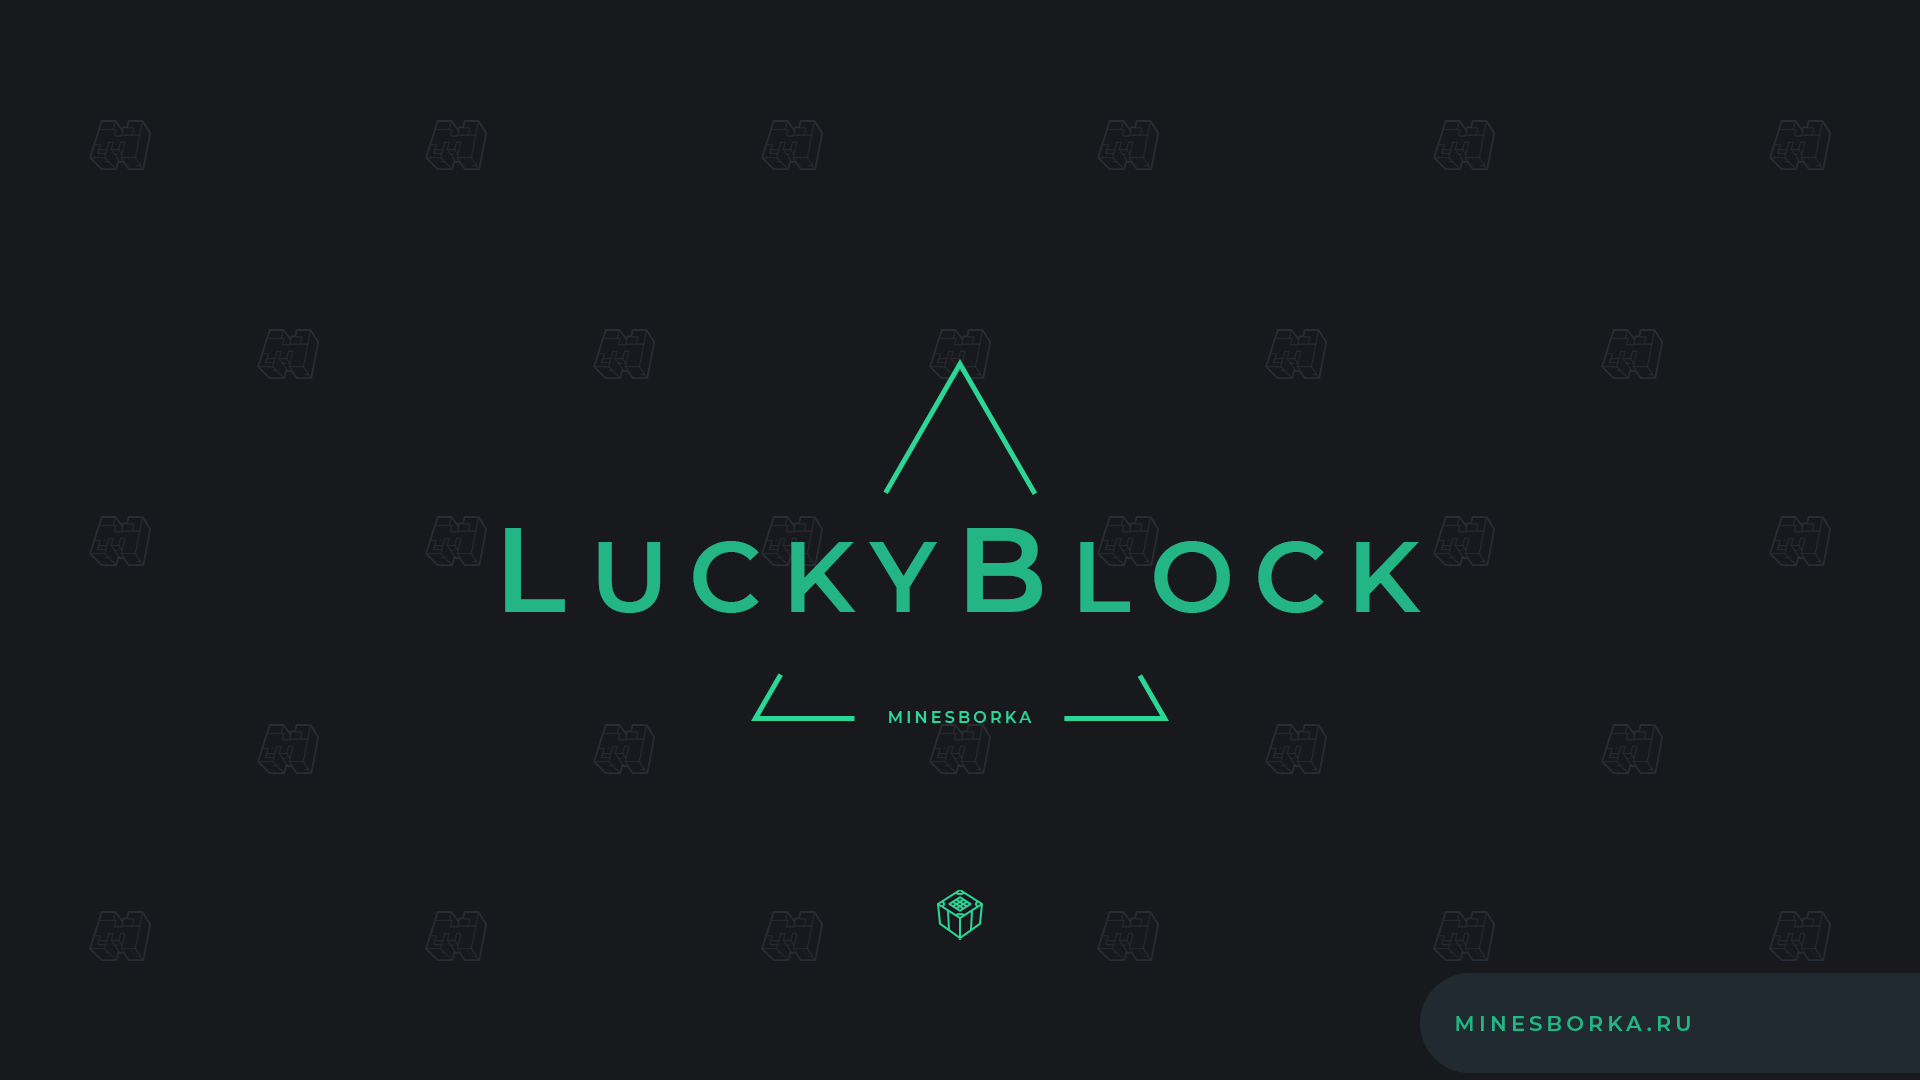 Скачать плагин LuckyBlocks | Лаки блоки на сервере Майнкрафт без модов | Лаки блоки с боссами